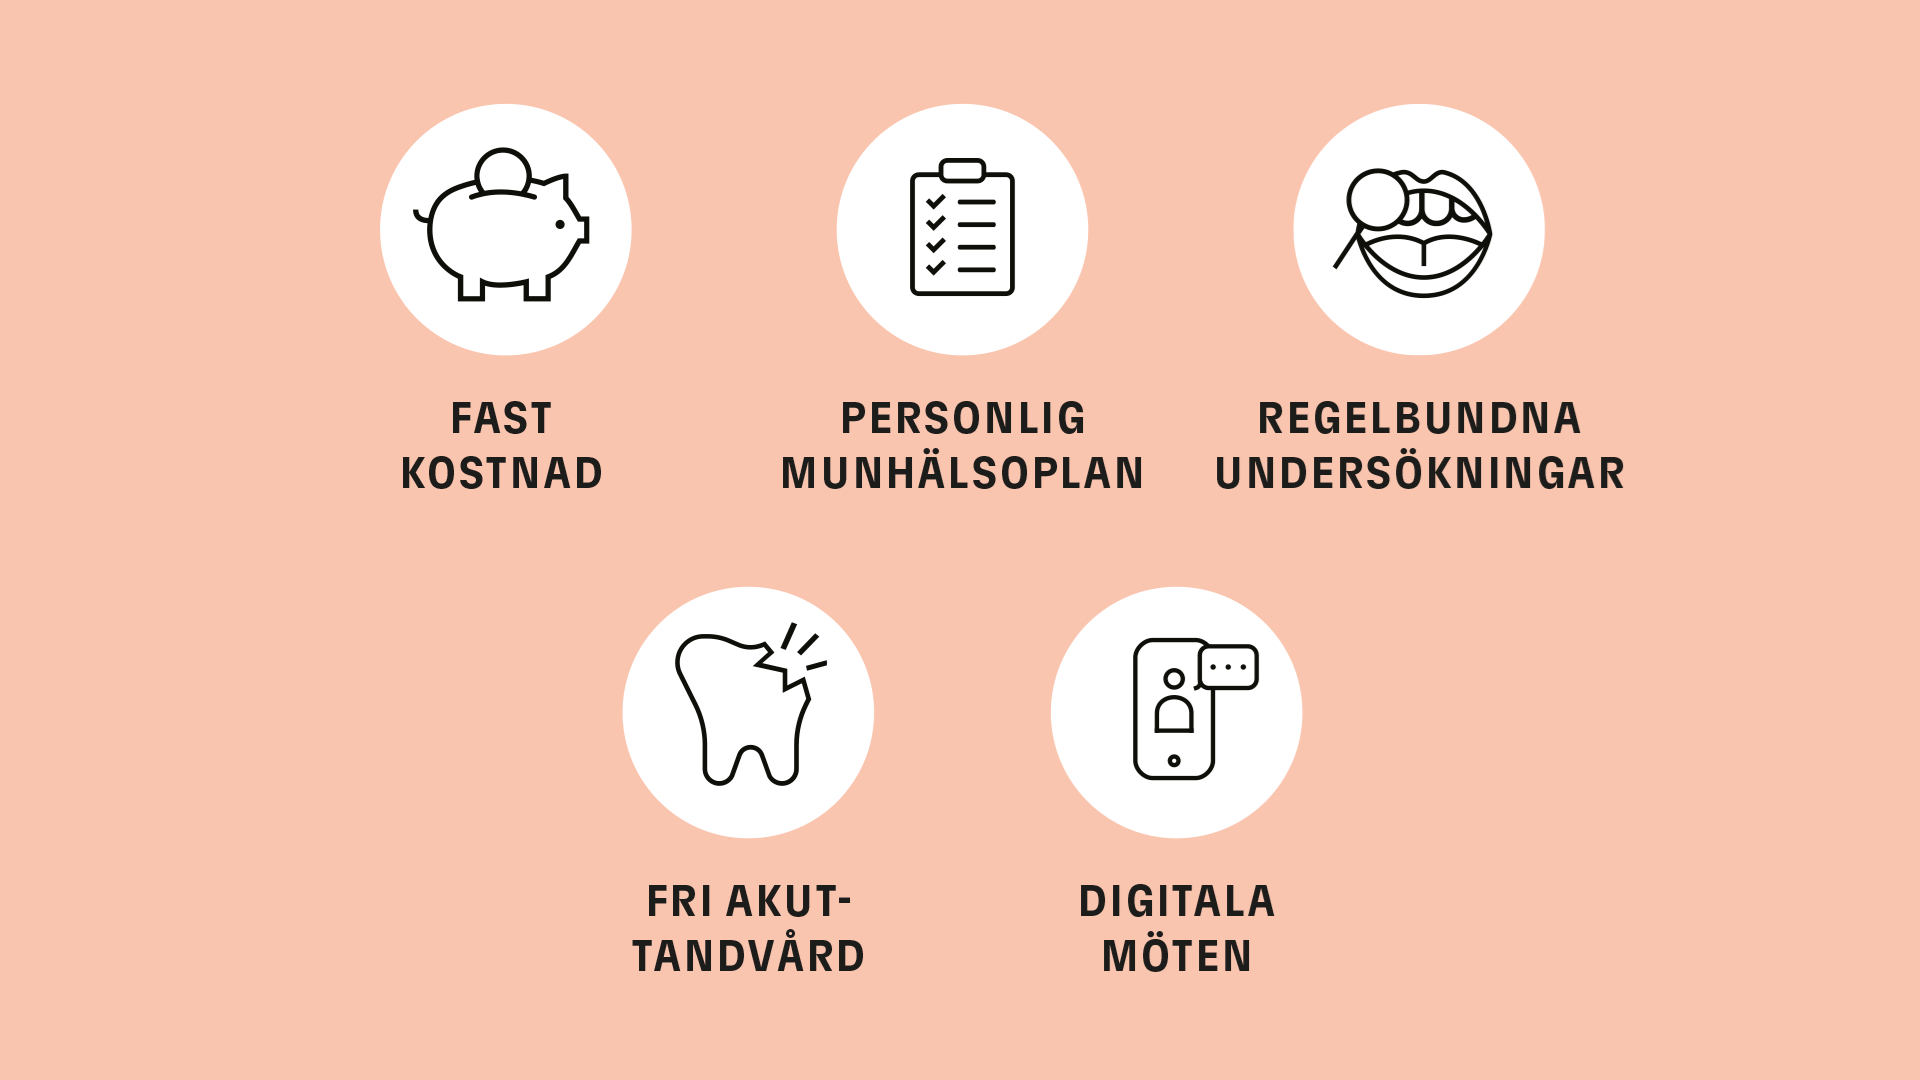 En illustration som i text listar de viktigaste fördelarna med Frisktandvård: fast pris, personlig munhälsoplan, regelbundna undersökningar, fri akuttandvård och digitala möten. 